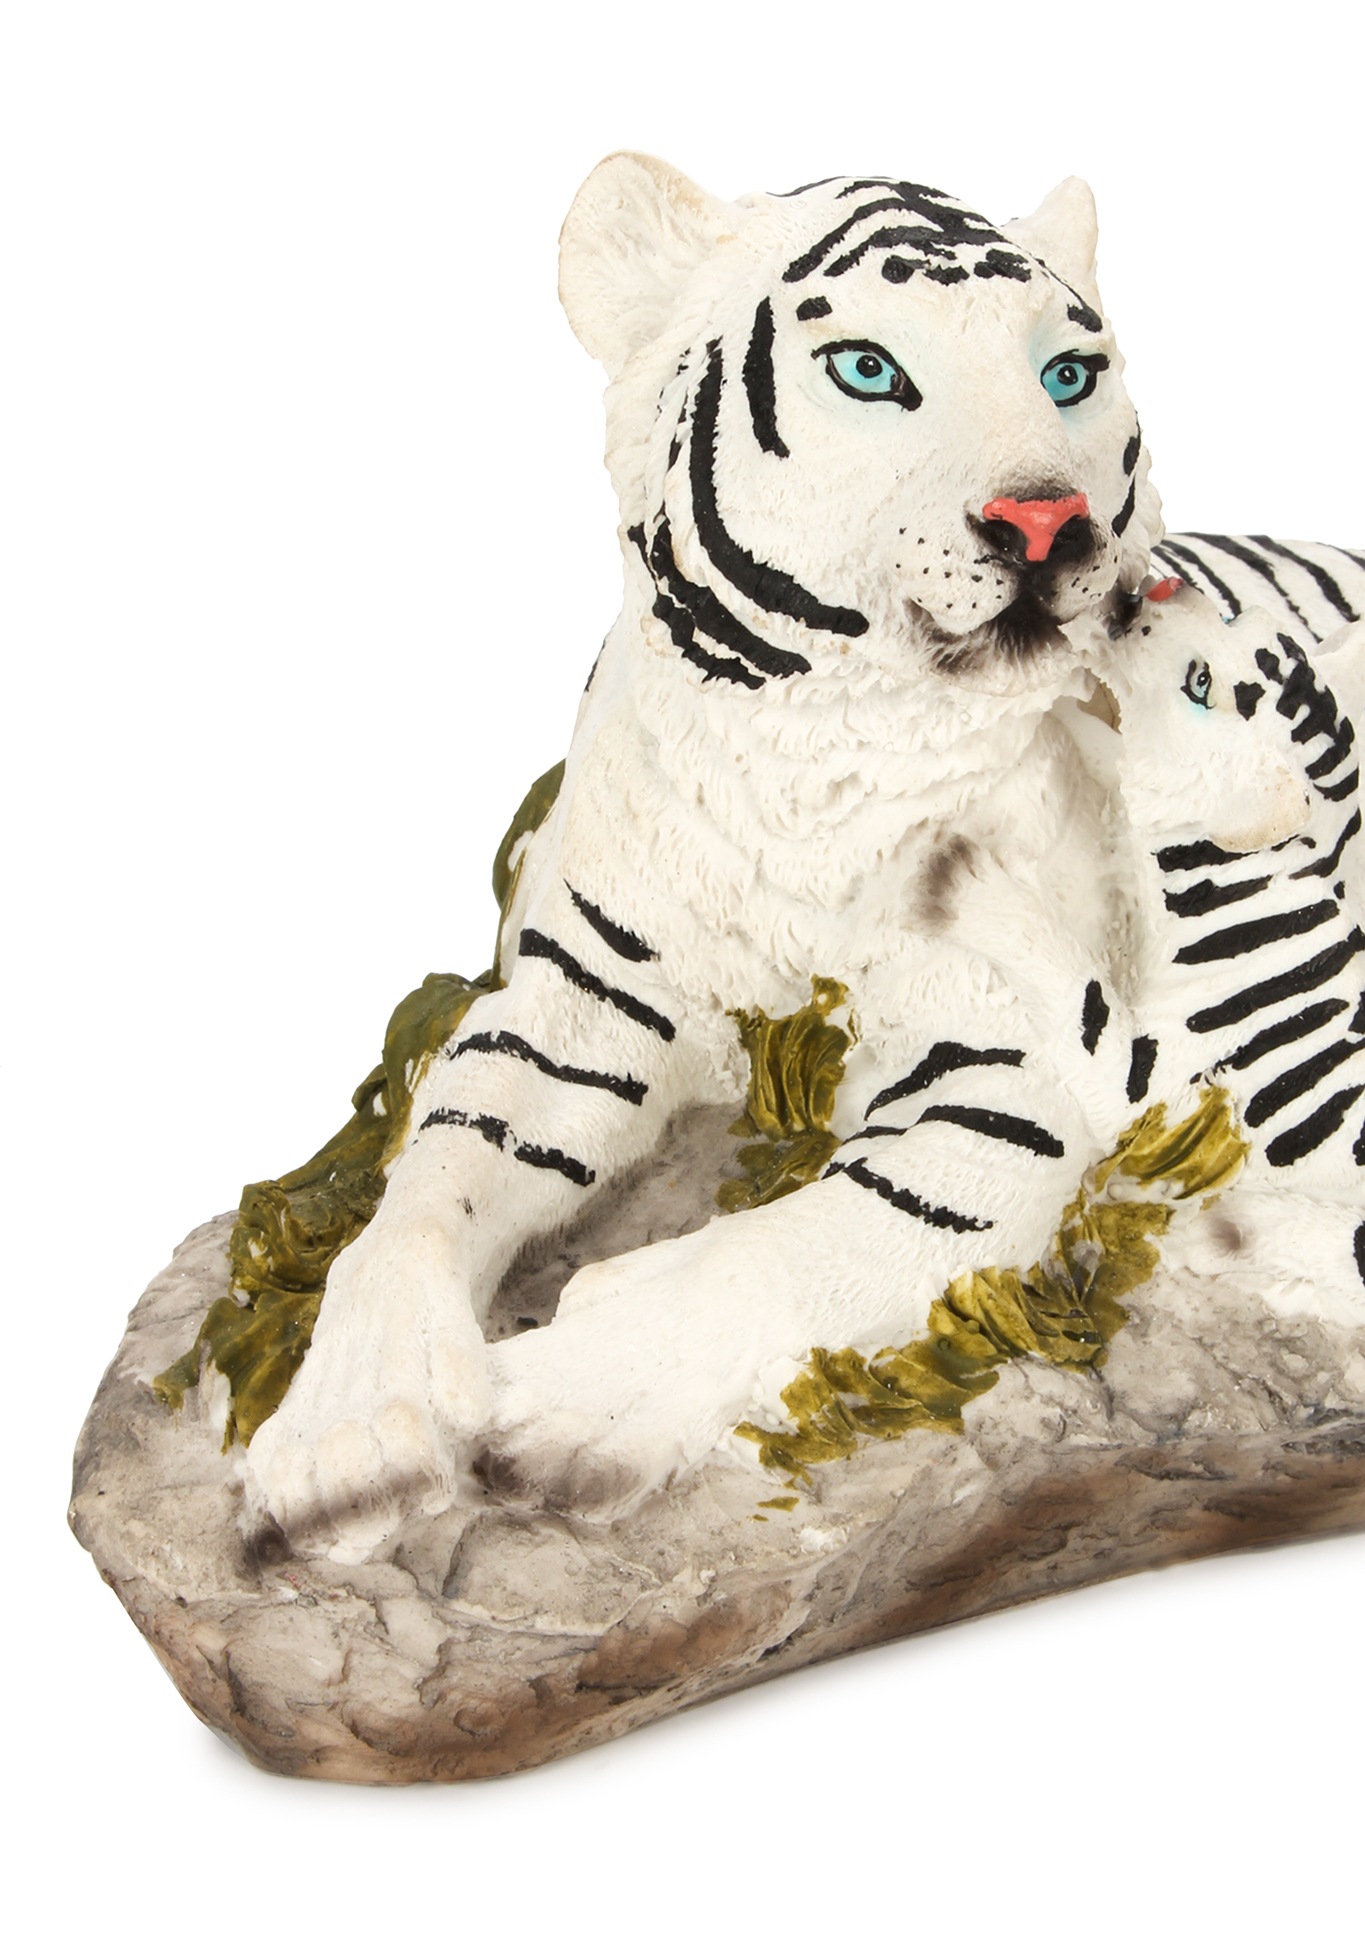 Оберег интерьерный "Тигр" Lefard, цвет стойка бенгальского тигра, размер 20,5*7*15 см - фото 9